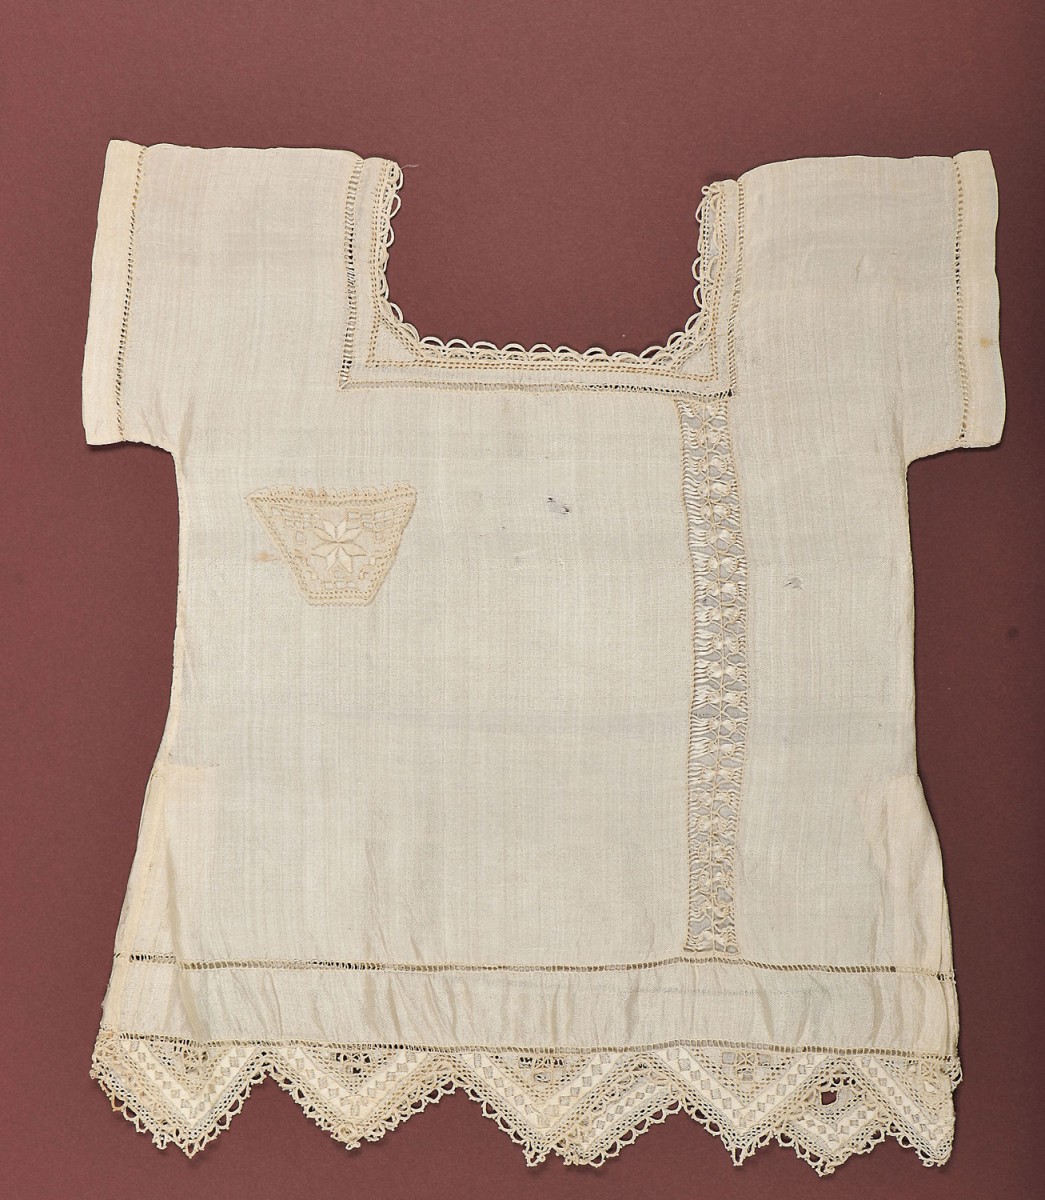 Βαφτιστικό μεταξωτό φορεματάκι με λευκαρίτικο κέντημα. Συλλογή Λεβέντειου Δημοτικού Μουσείου Λευκωσίας. Δωρεά: Γ. Μαυραντώνη.